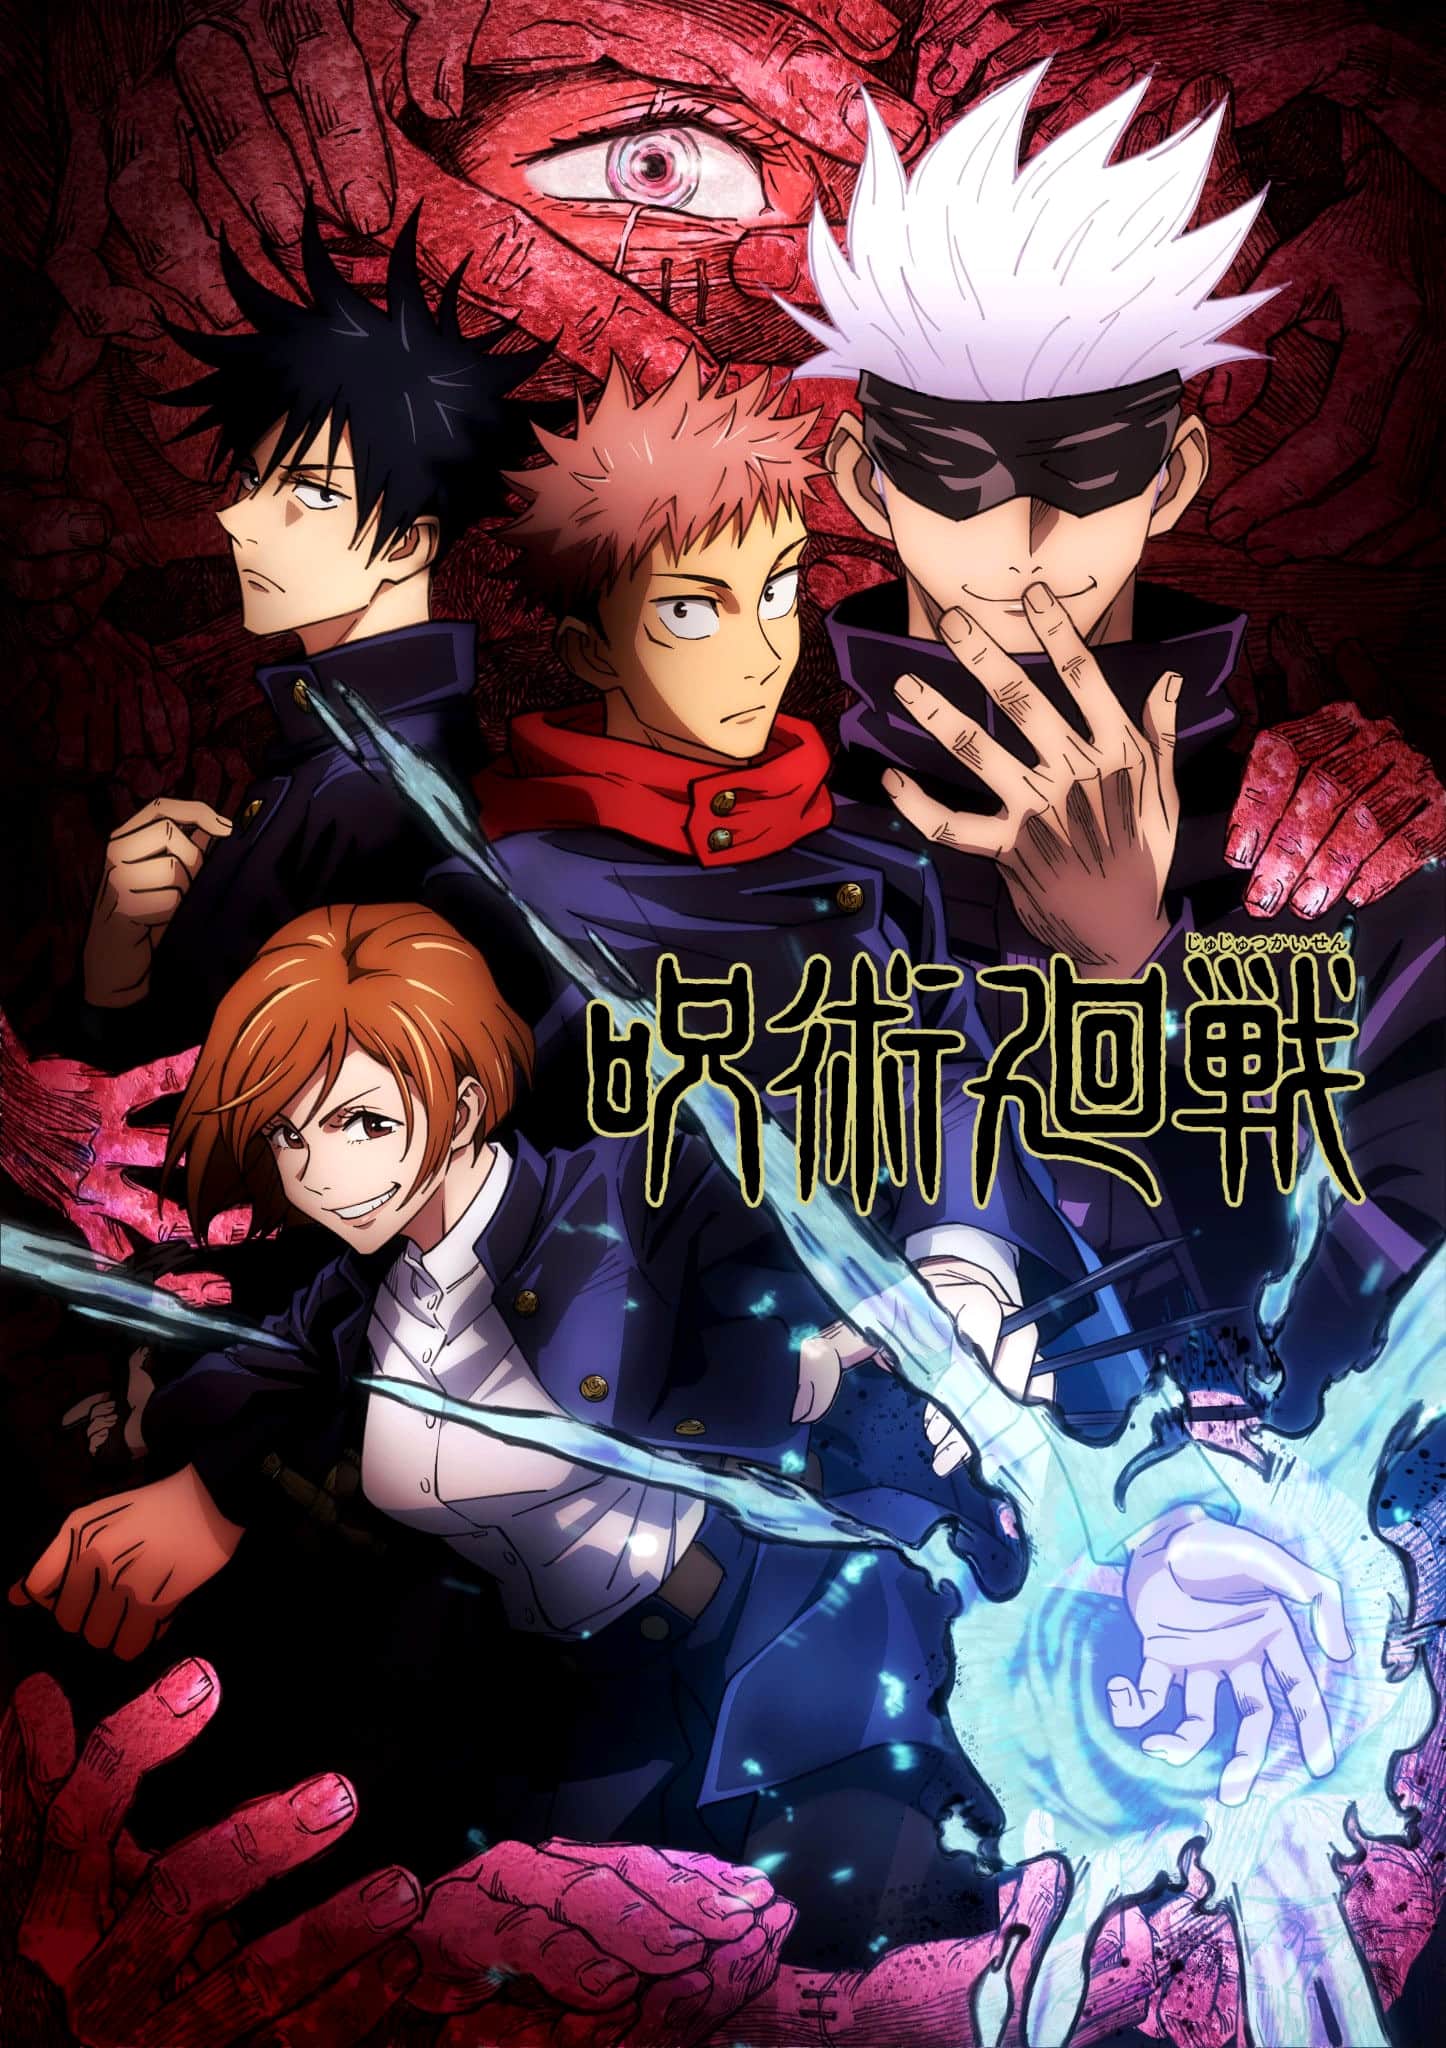 Annonce d'un trailer pour l'anime Jujutsu Kaisen